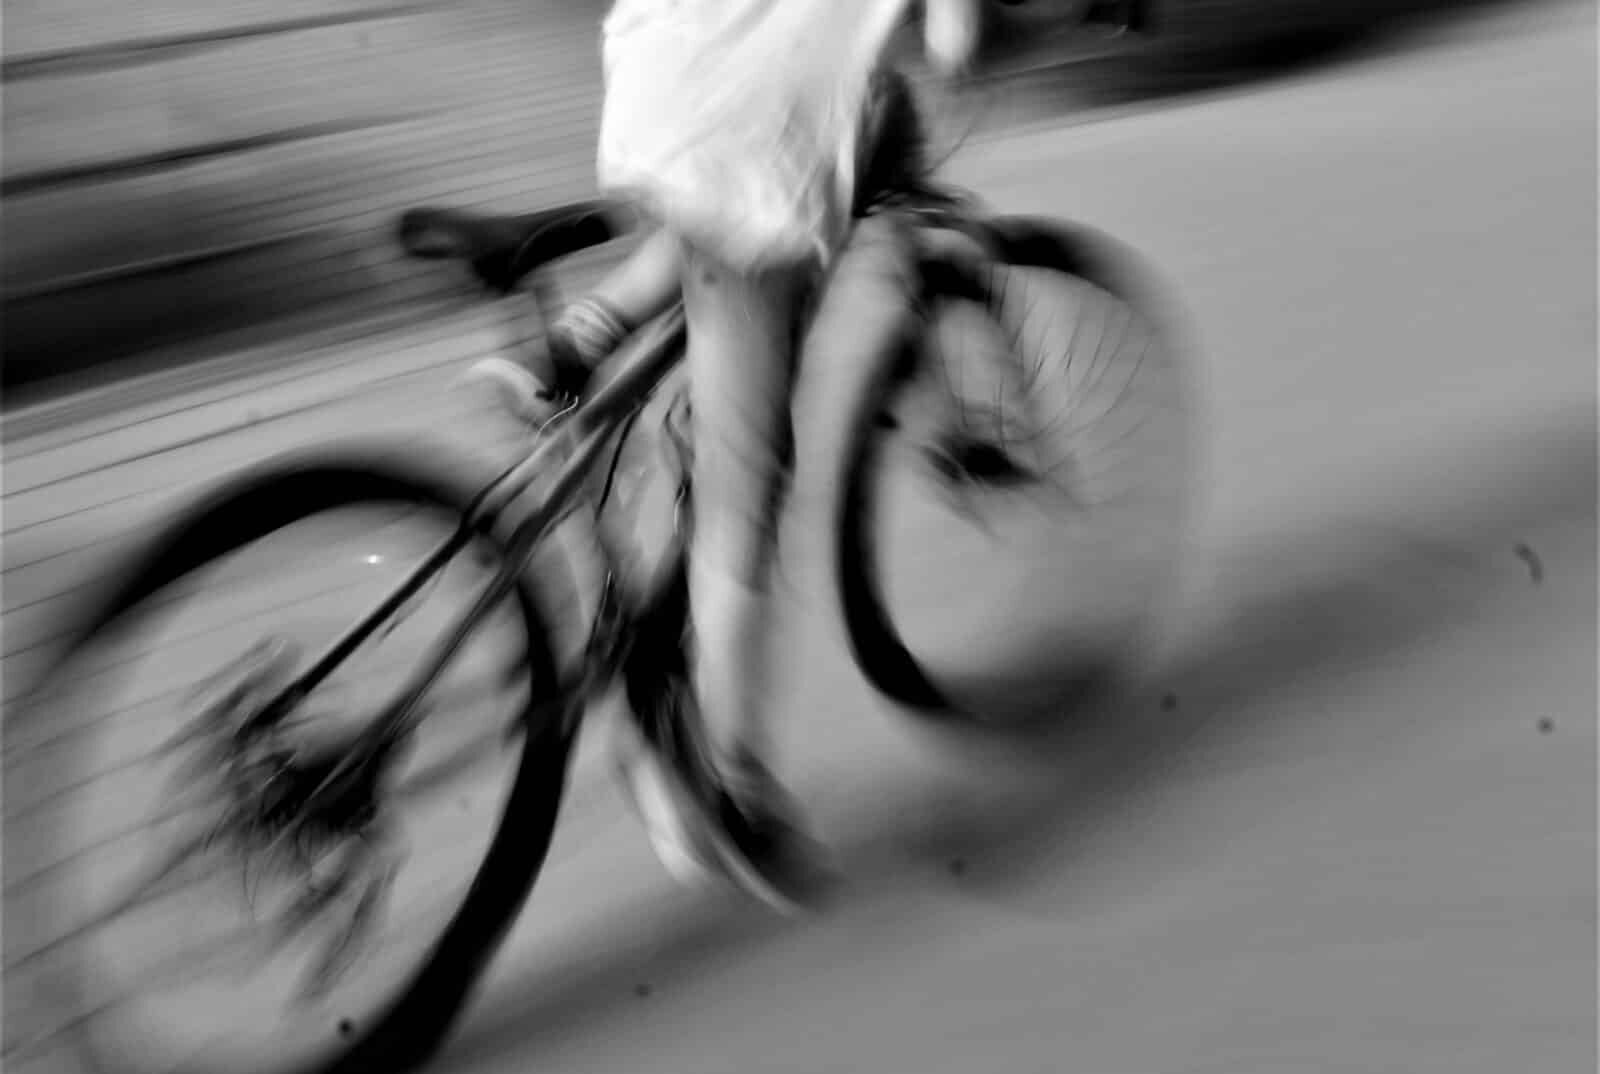 Ha un malore e cade dalla bicicletta, donna muore a Palermo